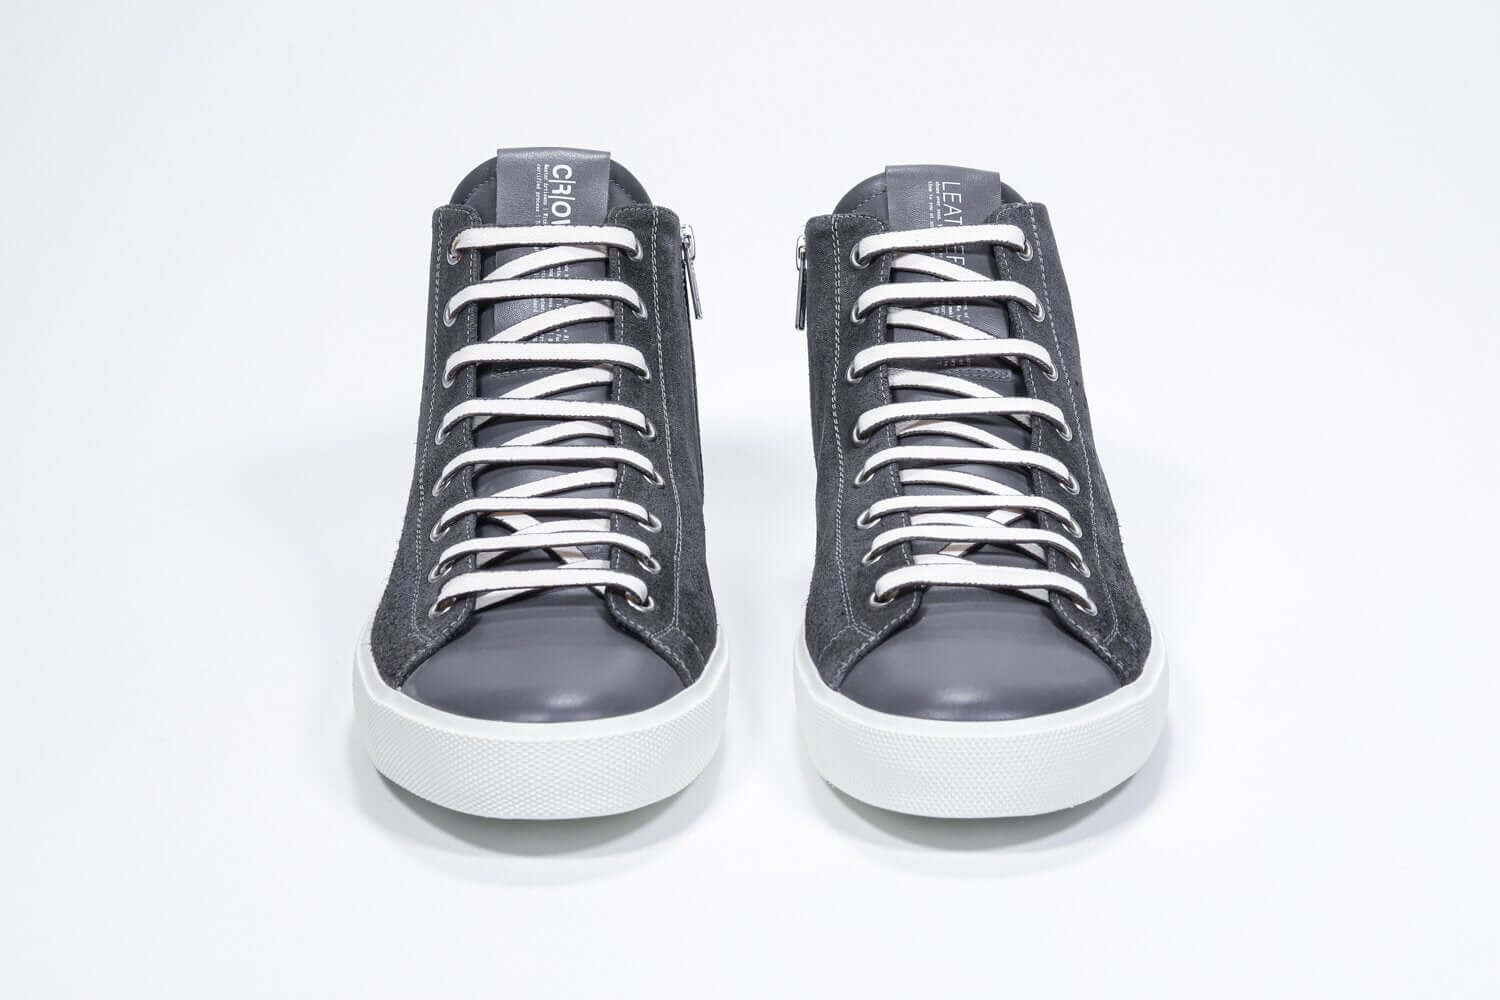 Vue de face du modèle mid top gris foncé sneaker à tige entièrement en daim avec logo perforé, fermeture à glissière interne et semelle blanche.